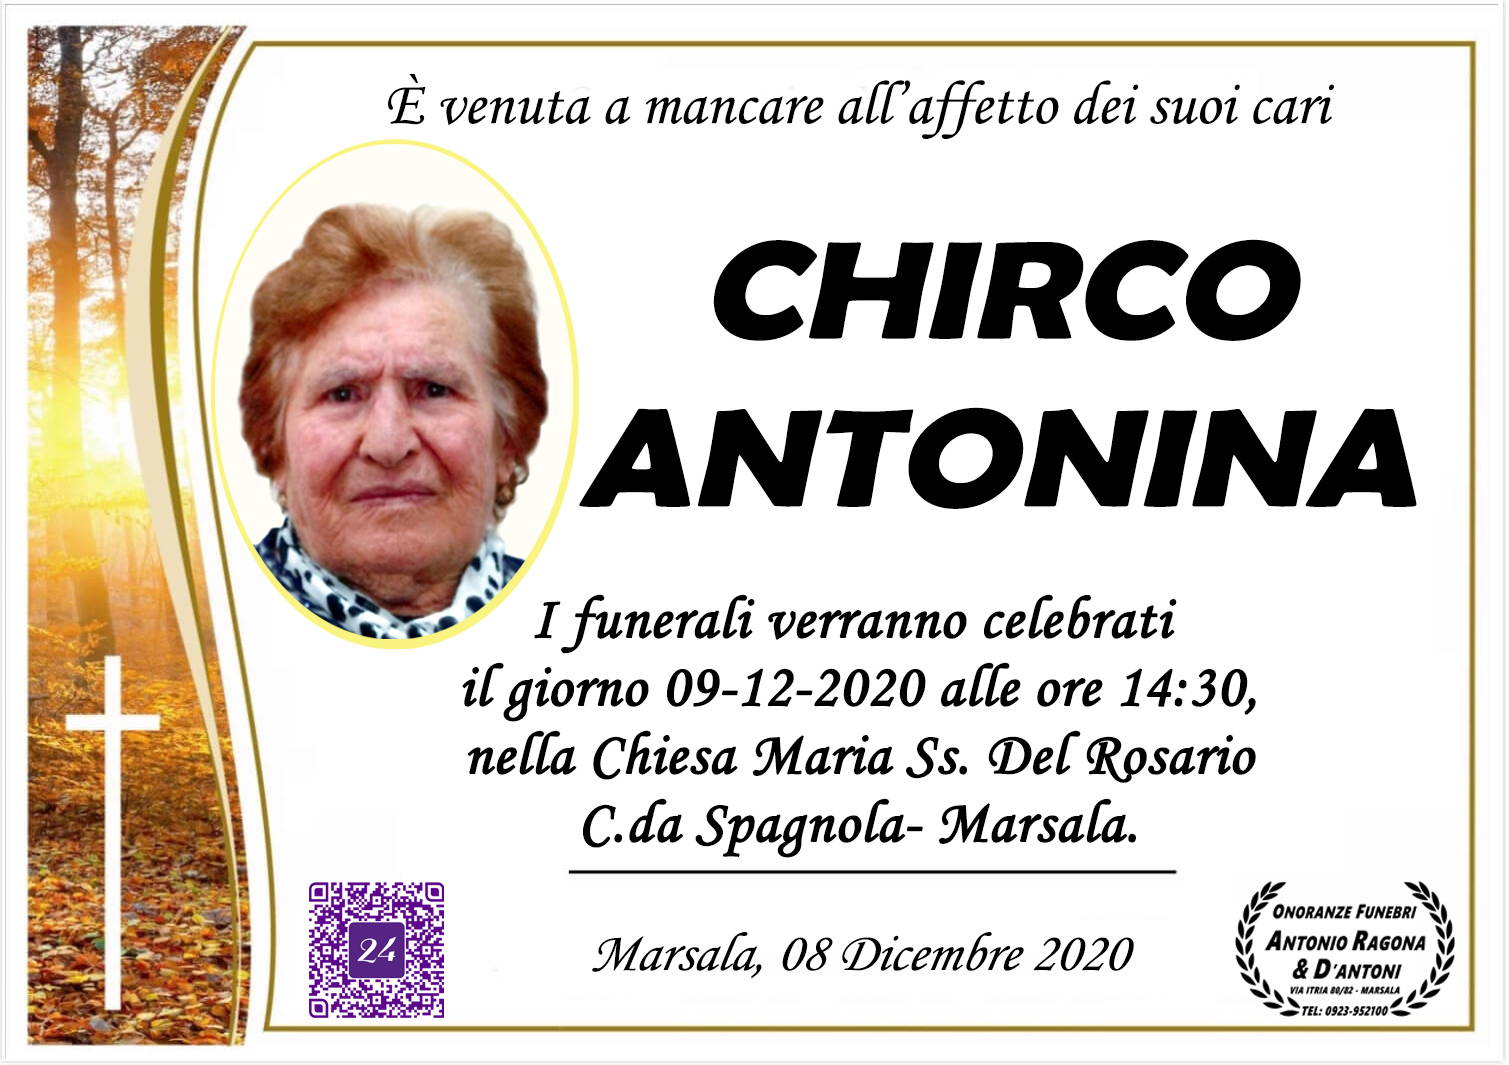 Antonina Chirco